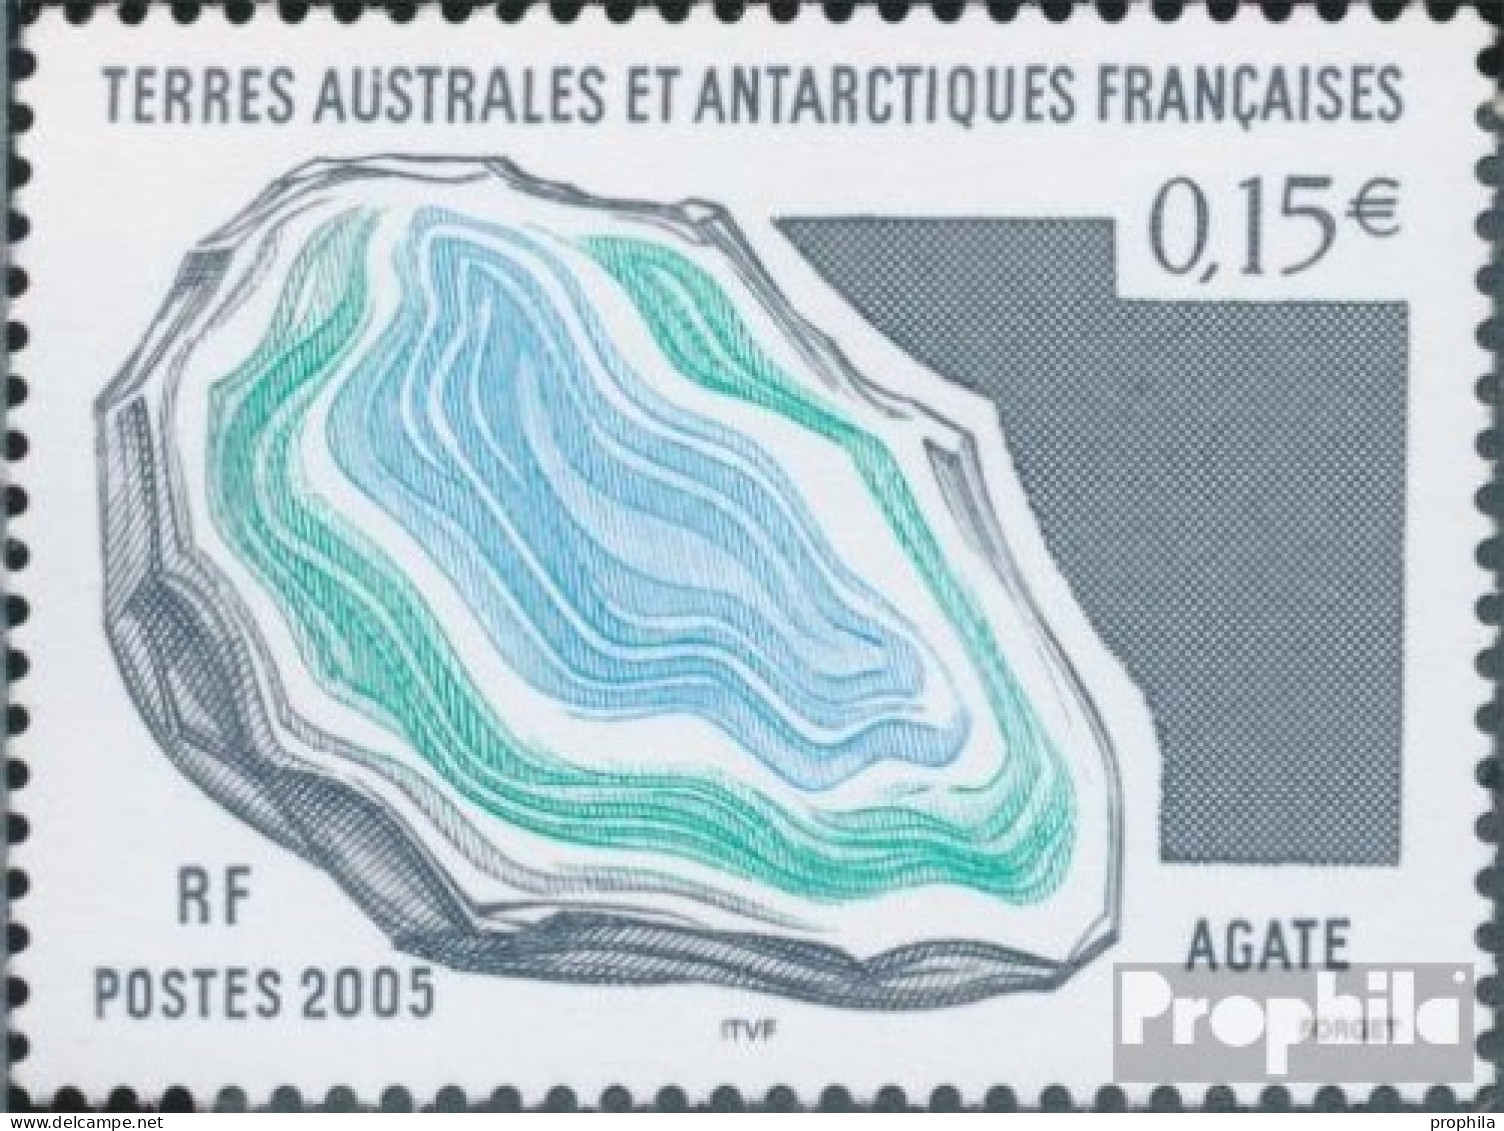 Französ. Gebiete Antarktis 556 (kompl.Ausg.) Postfrisch 2005 Mineralien - Unused Stamps